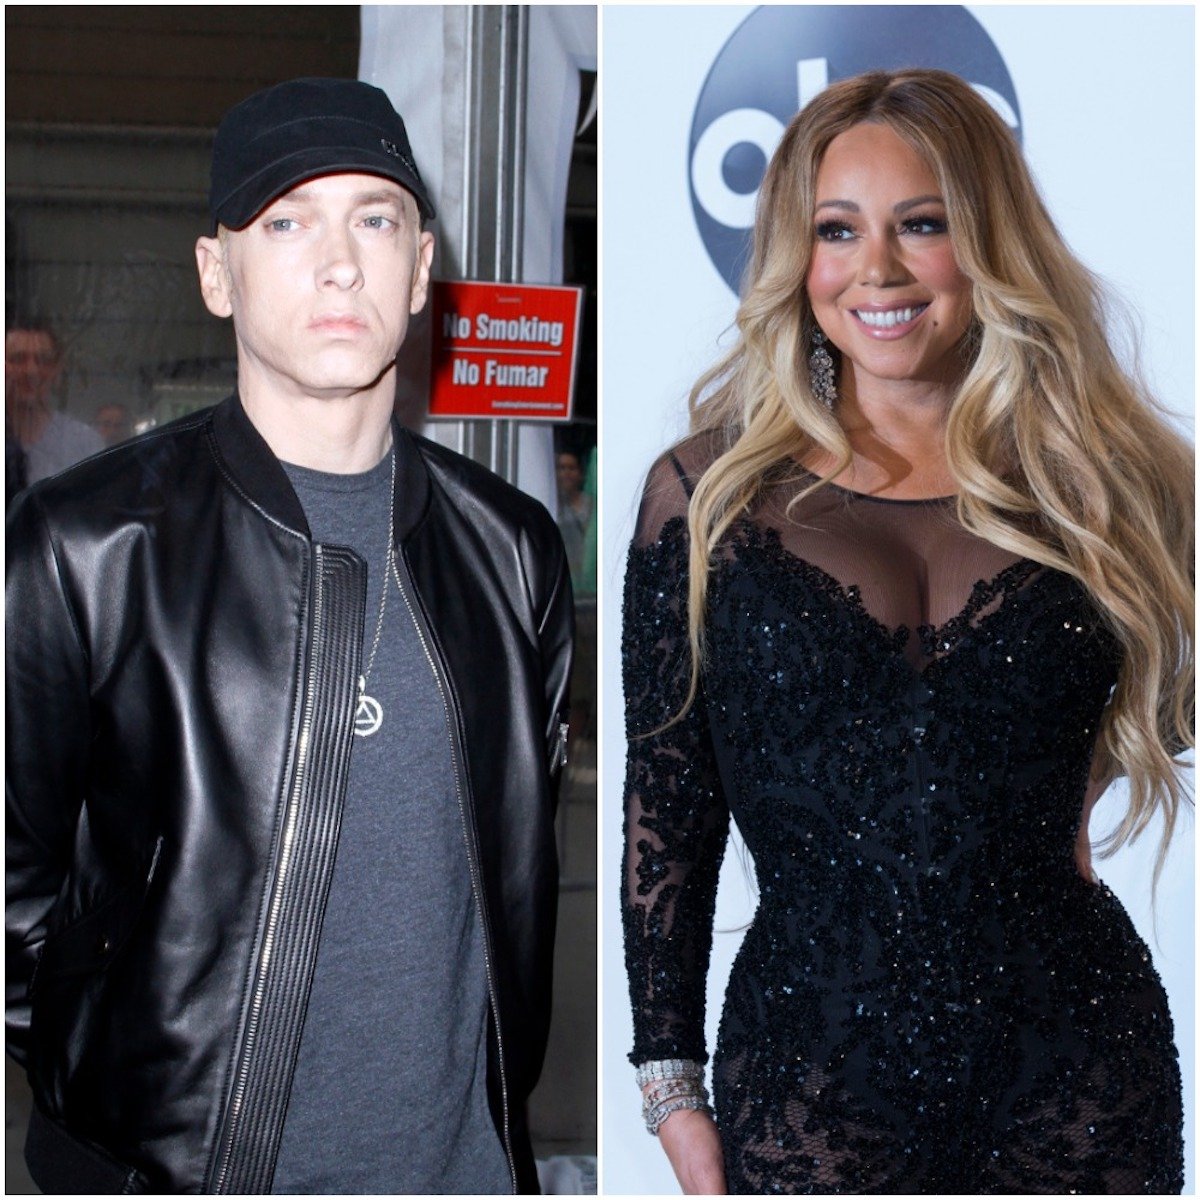 Eminem and Mariah Carey